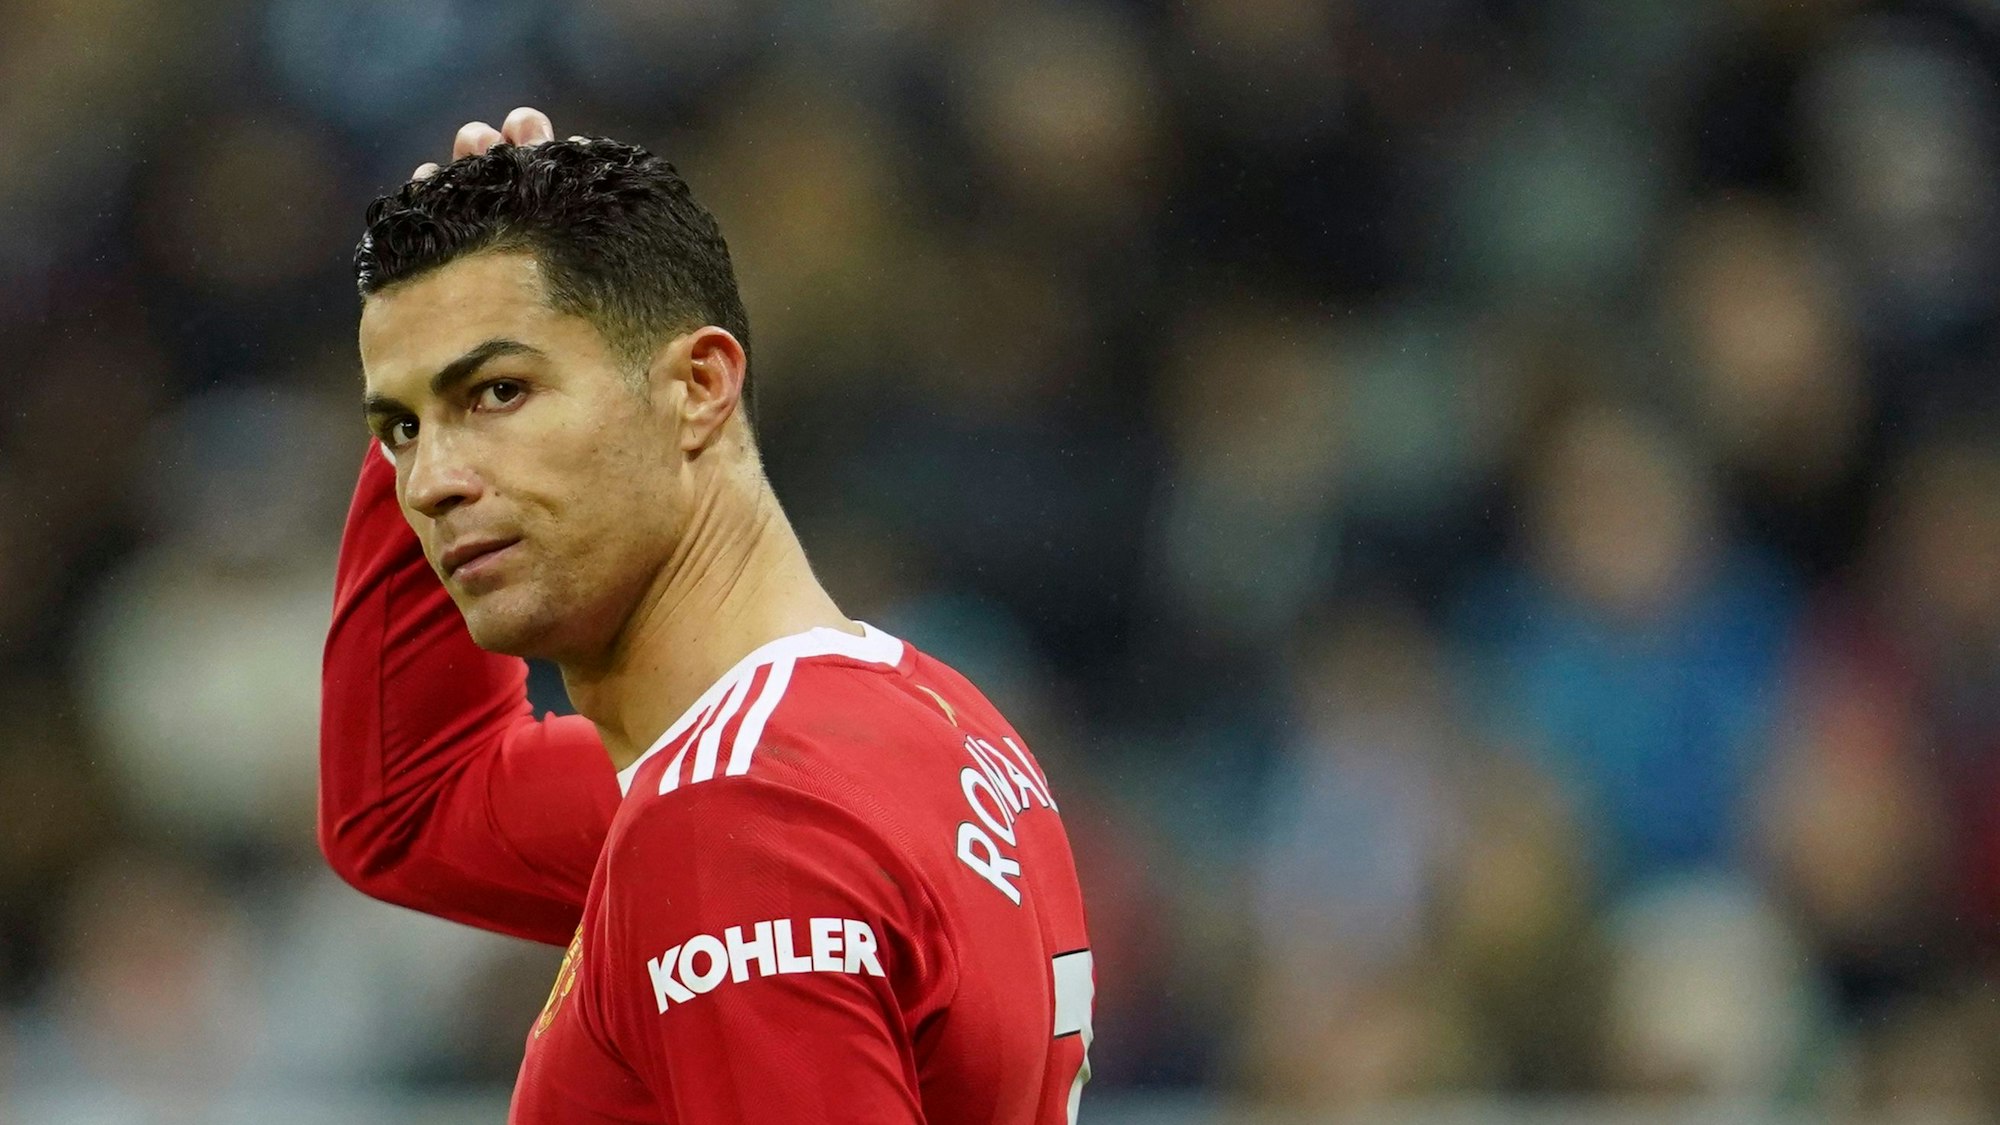 Cristiano Ronaldo kratzt sich fristriert an den Haaren.